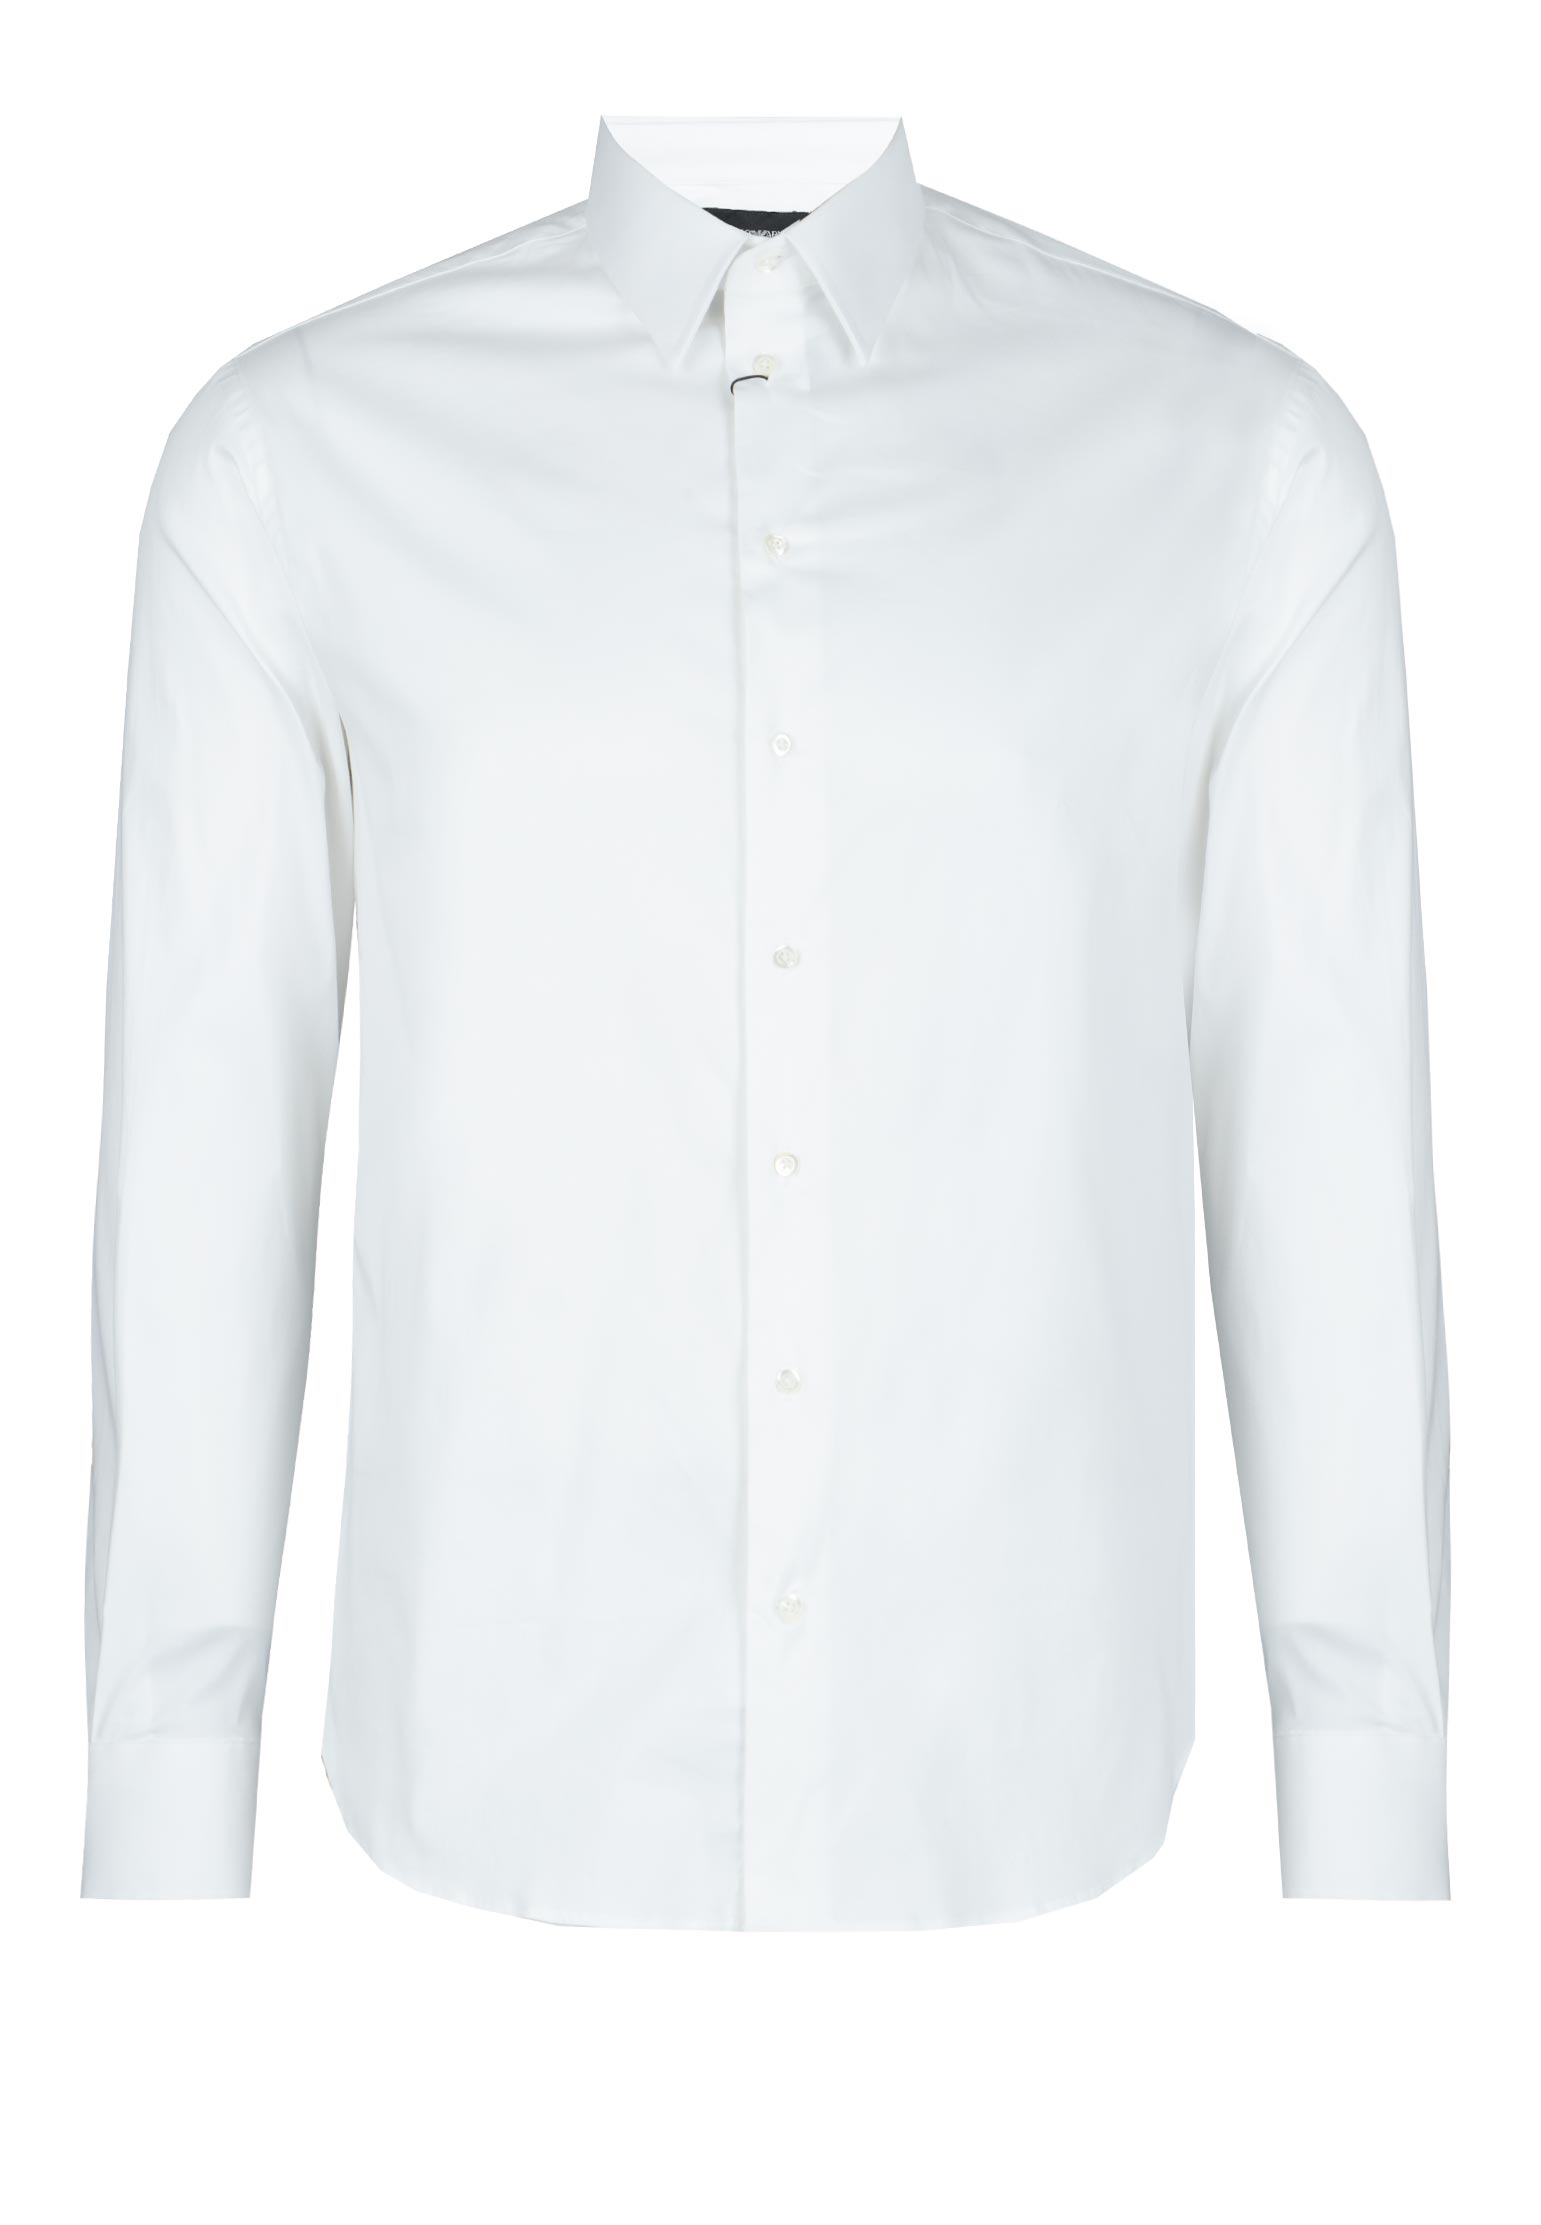 Рубашка мужская Emporio Armani 103006 белая 42